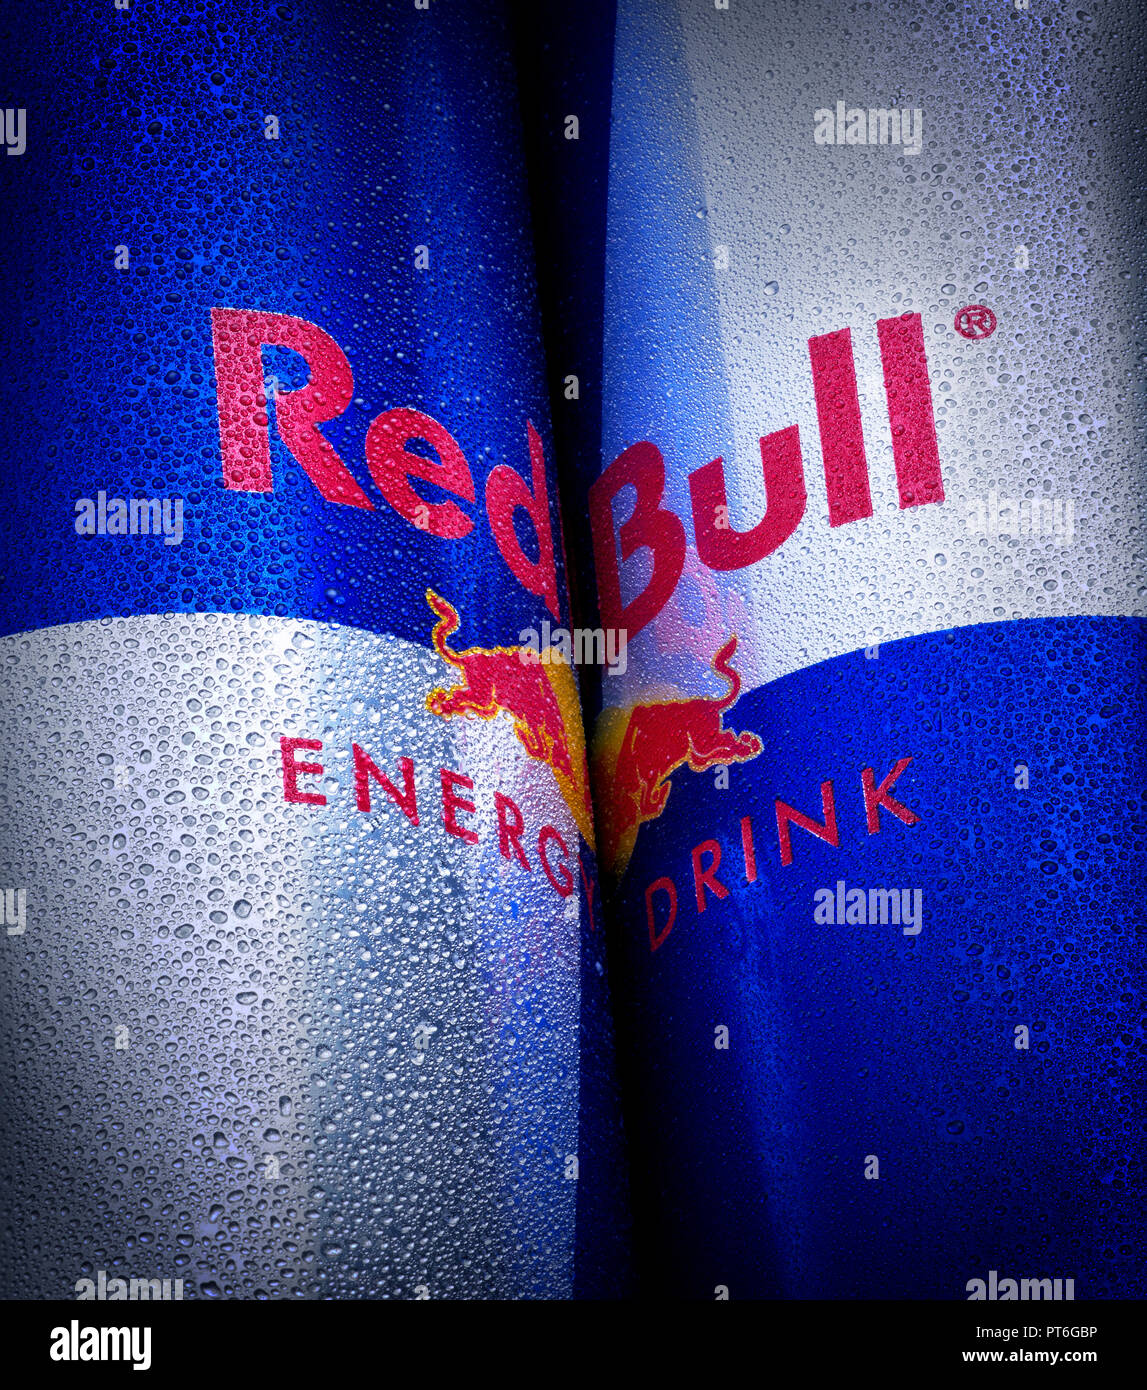 In der Nähe von Red Bull Logo auf einem Können, verschwitzt, Nass, Drip Drop, Kondensation Stockfoto